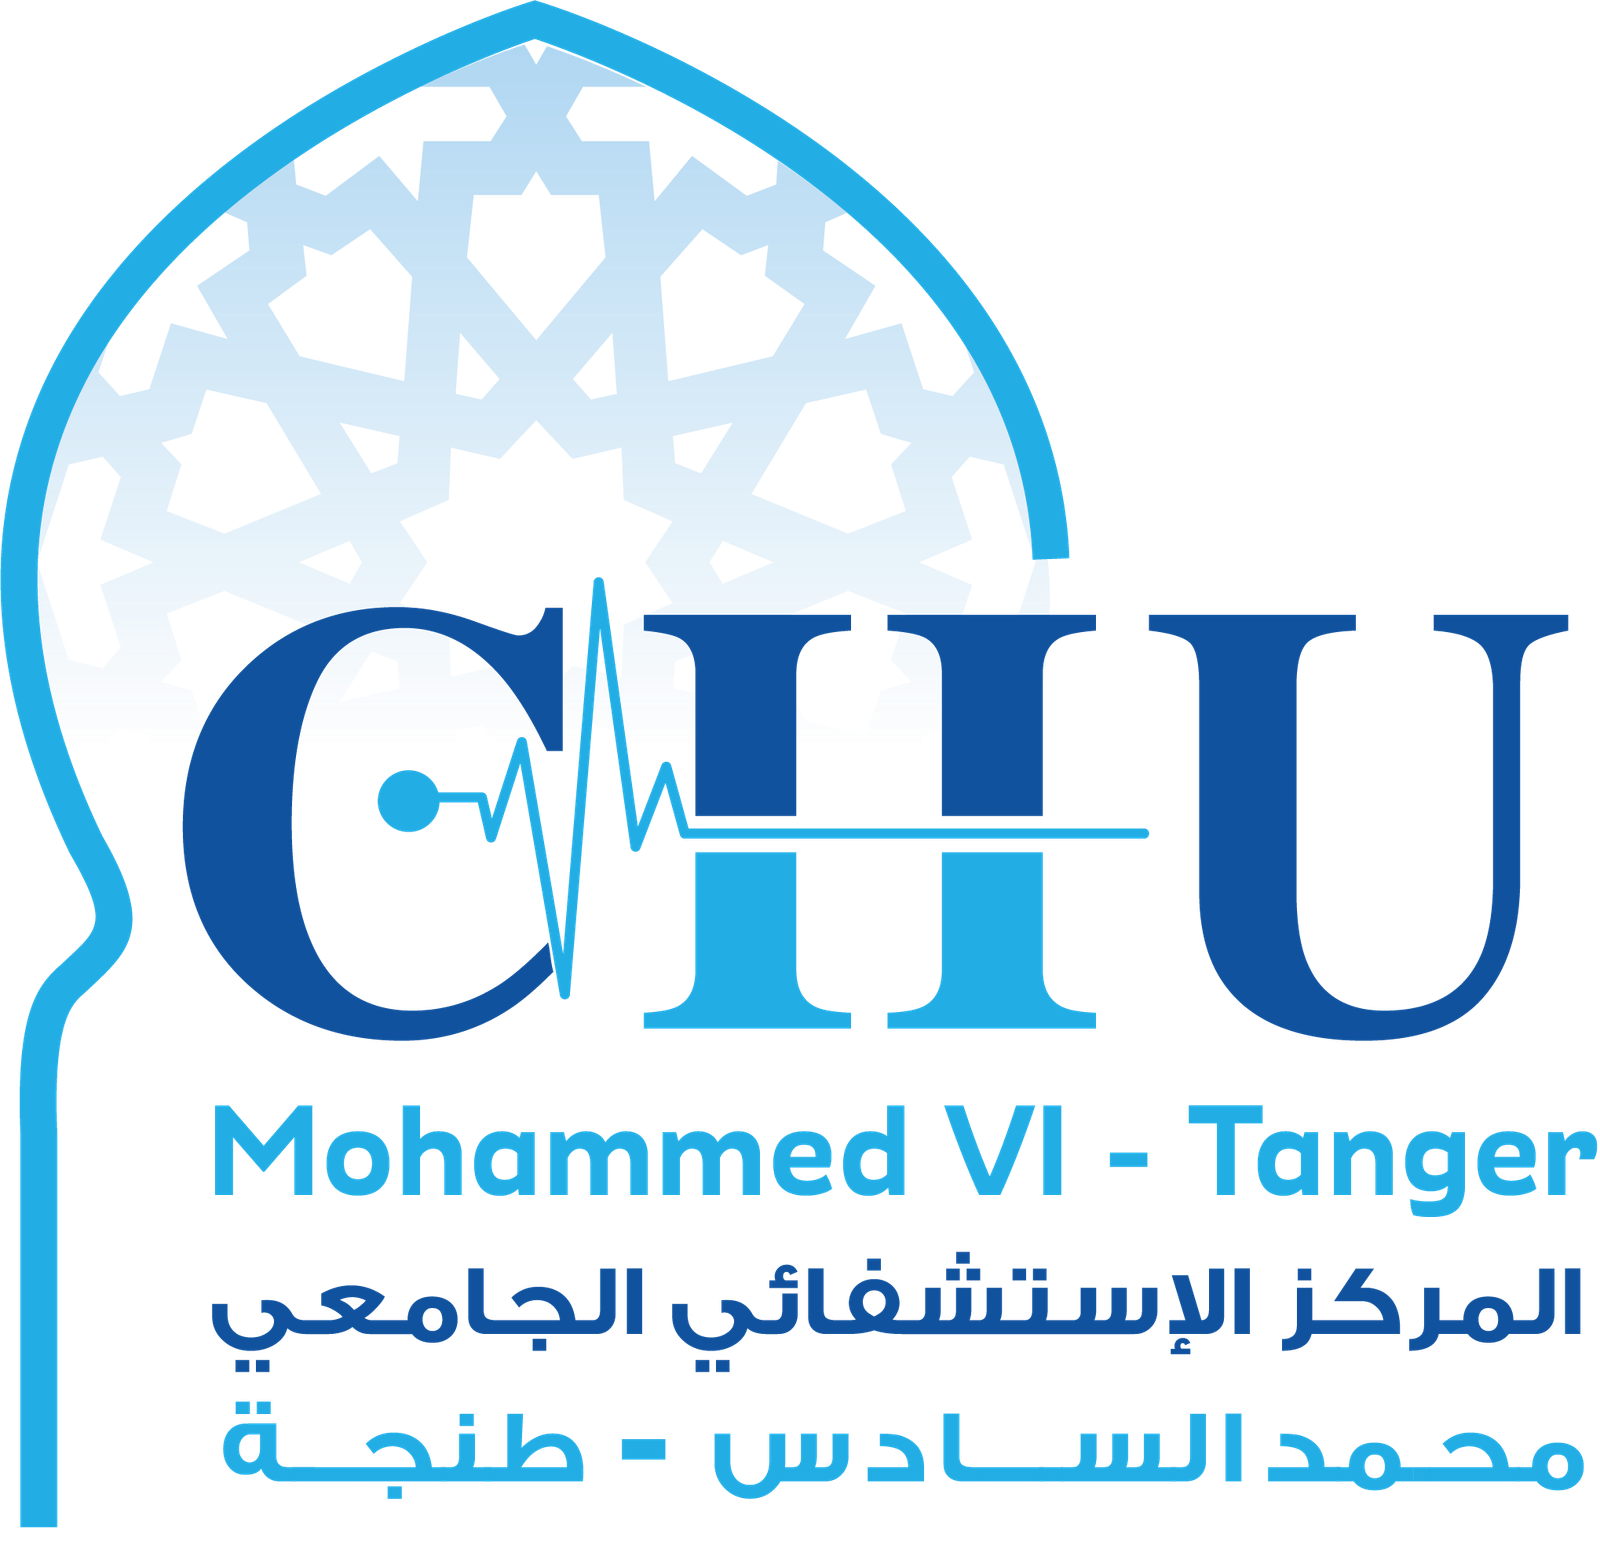 CHU Mohammed VI - Tanger